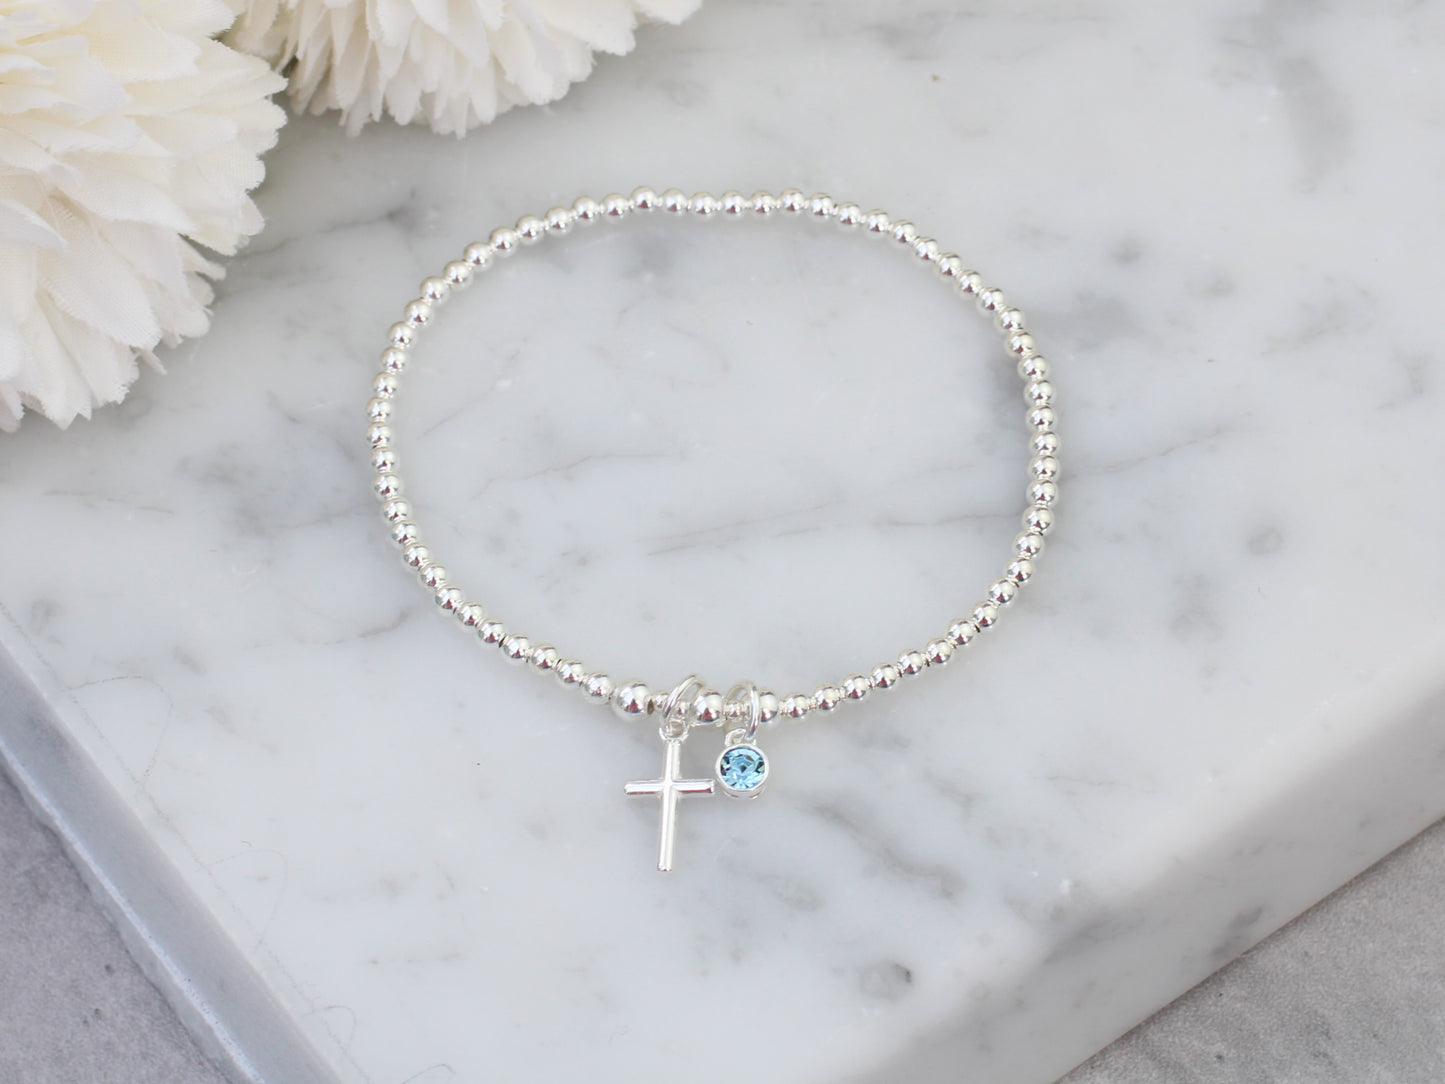 Cross bracelet with birthstone charm.